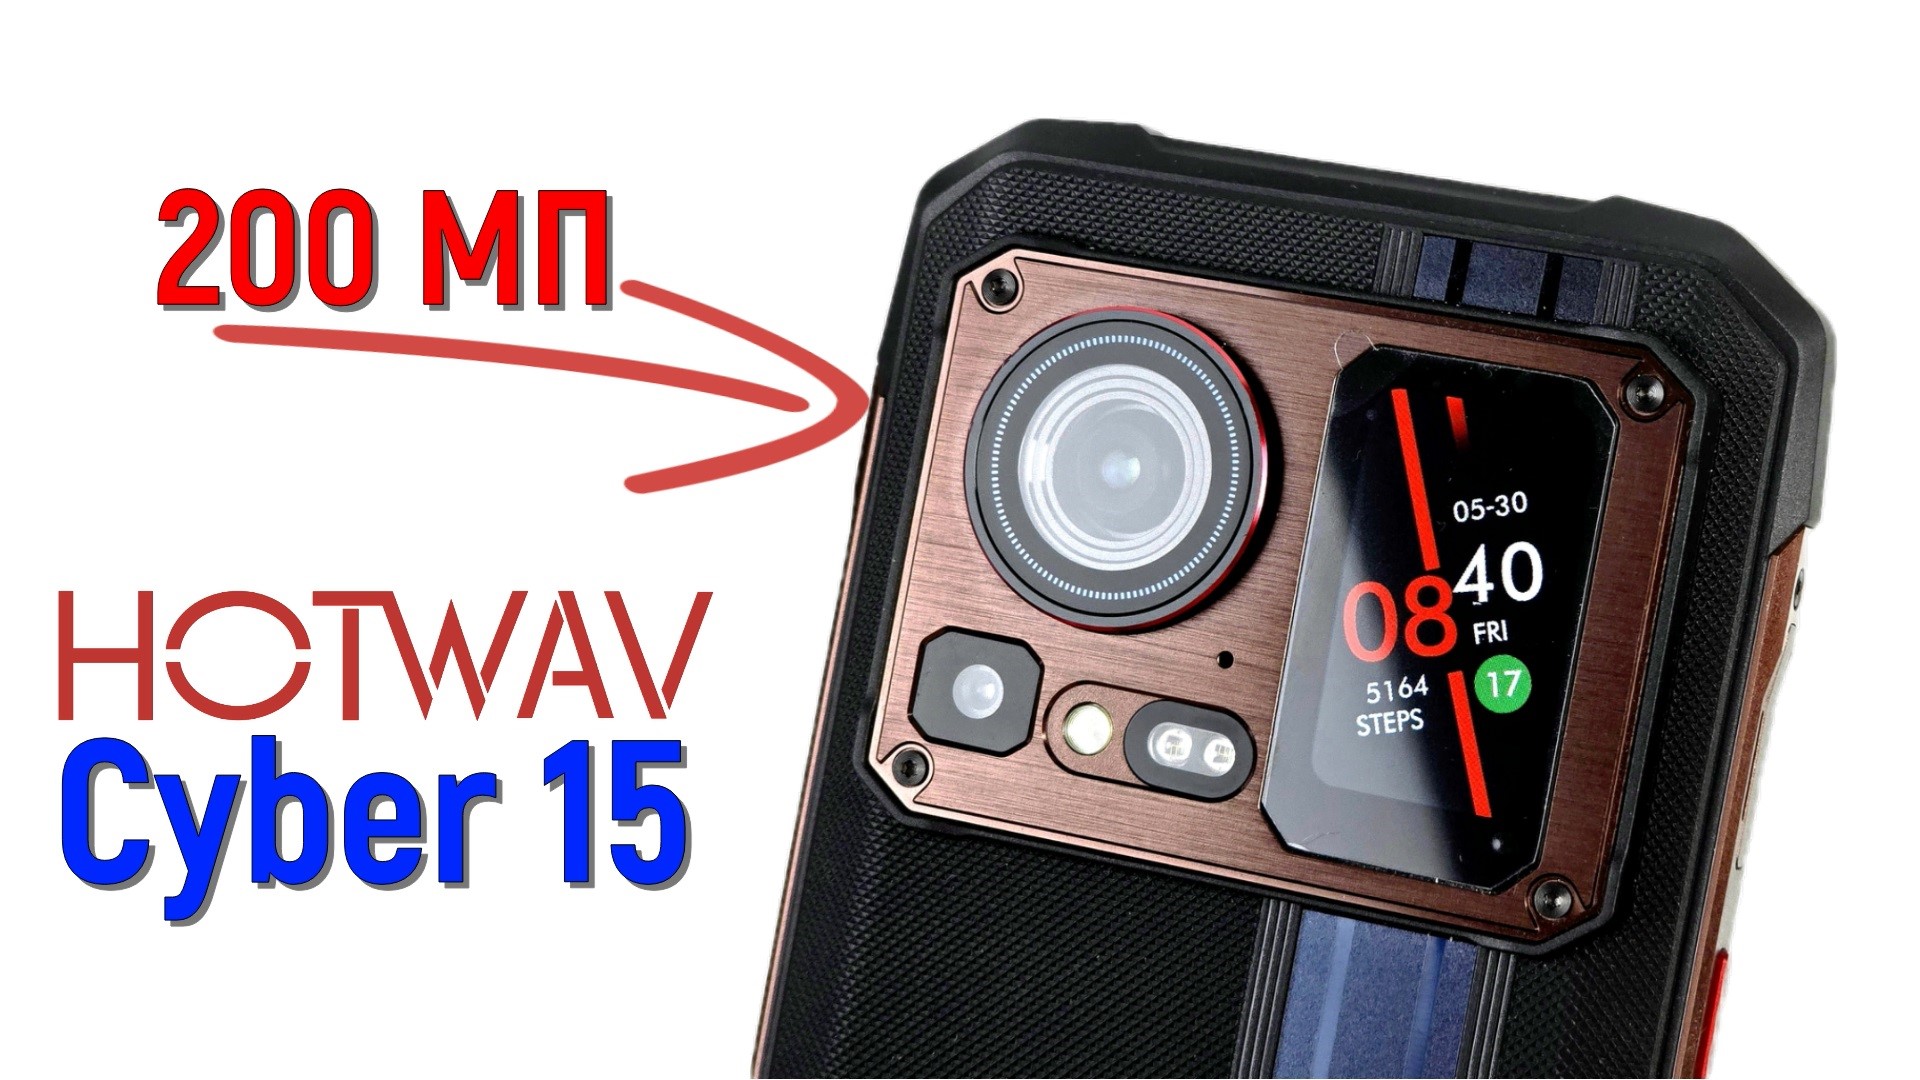 HOTWAV Cyber 15: защищенный смартфон с двумя экранами и камерой на 200 МП!